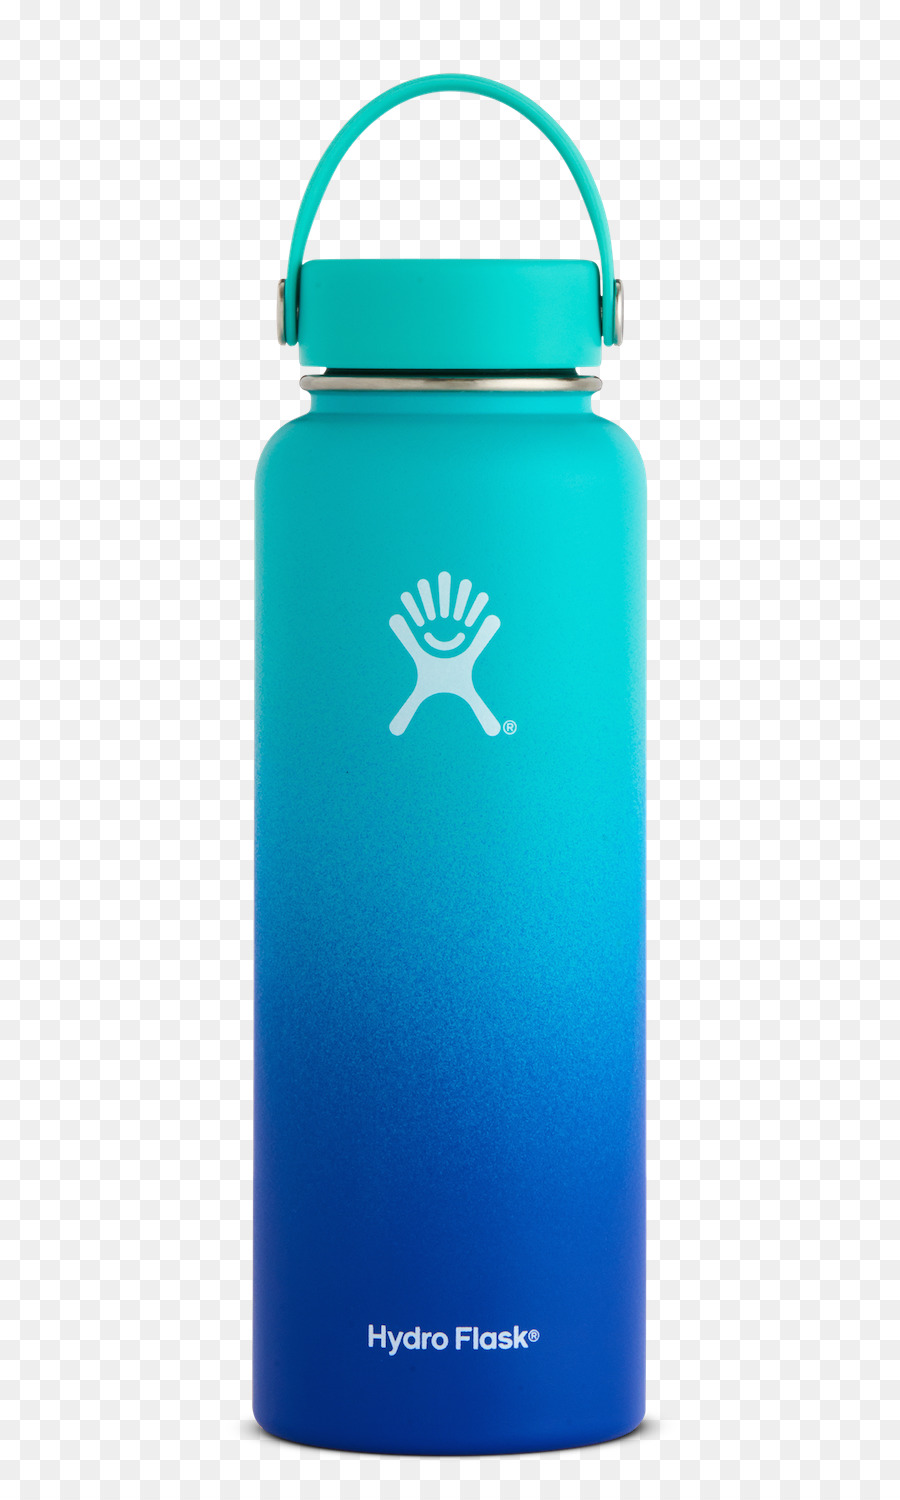 Bottiglie Di Acqua Hydro Flask Bere - bottiglia